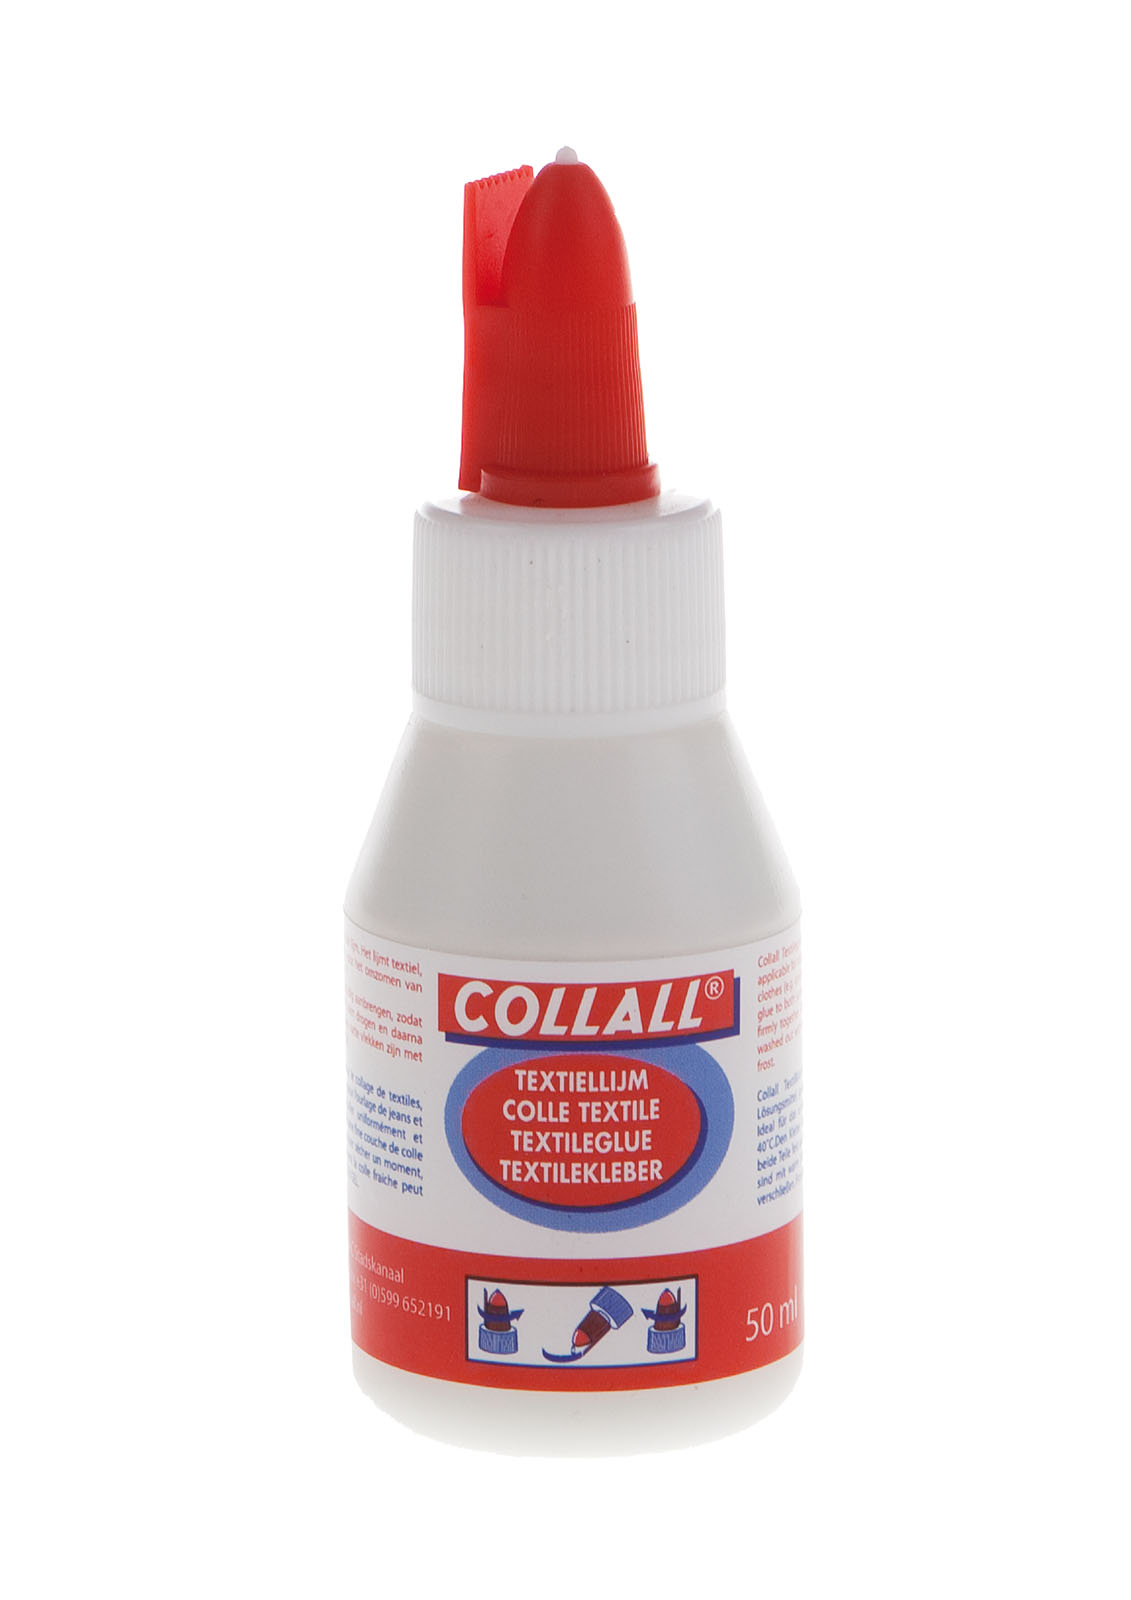 Collall • Textile glue 50ml